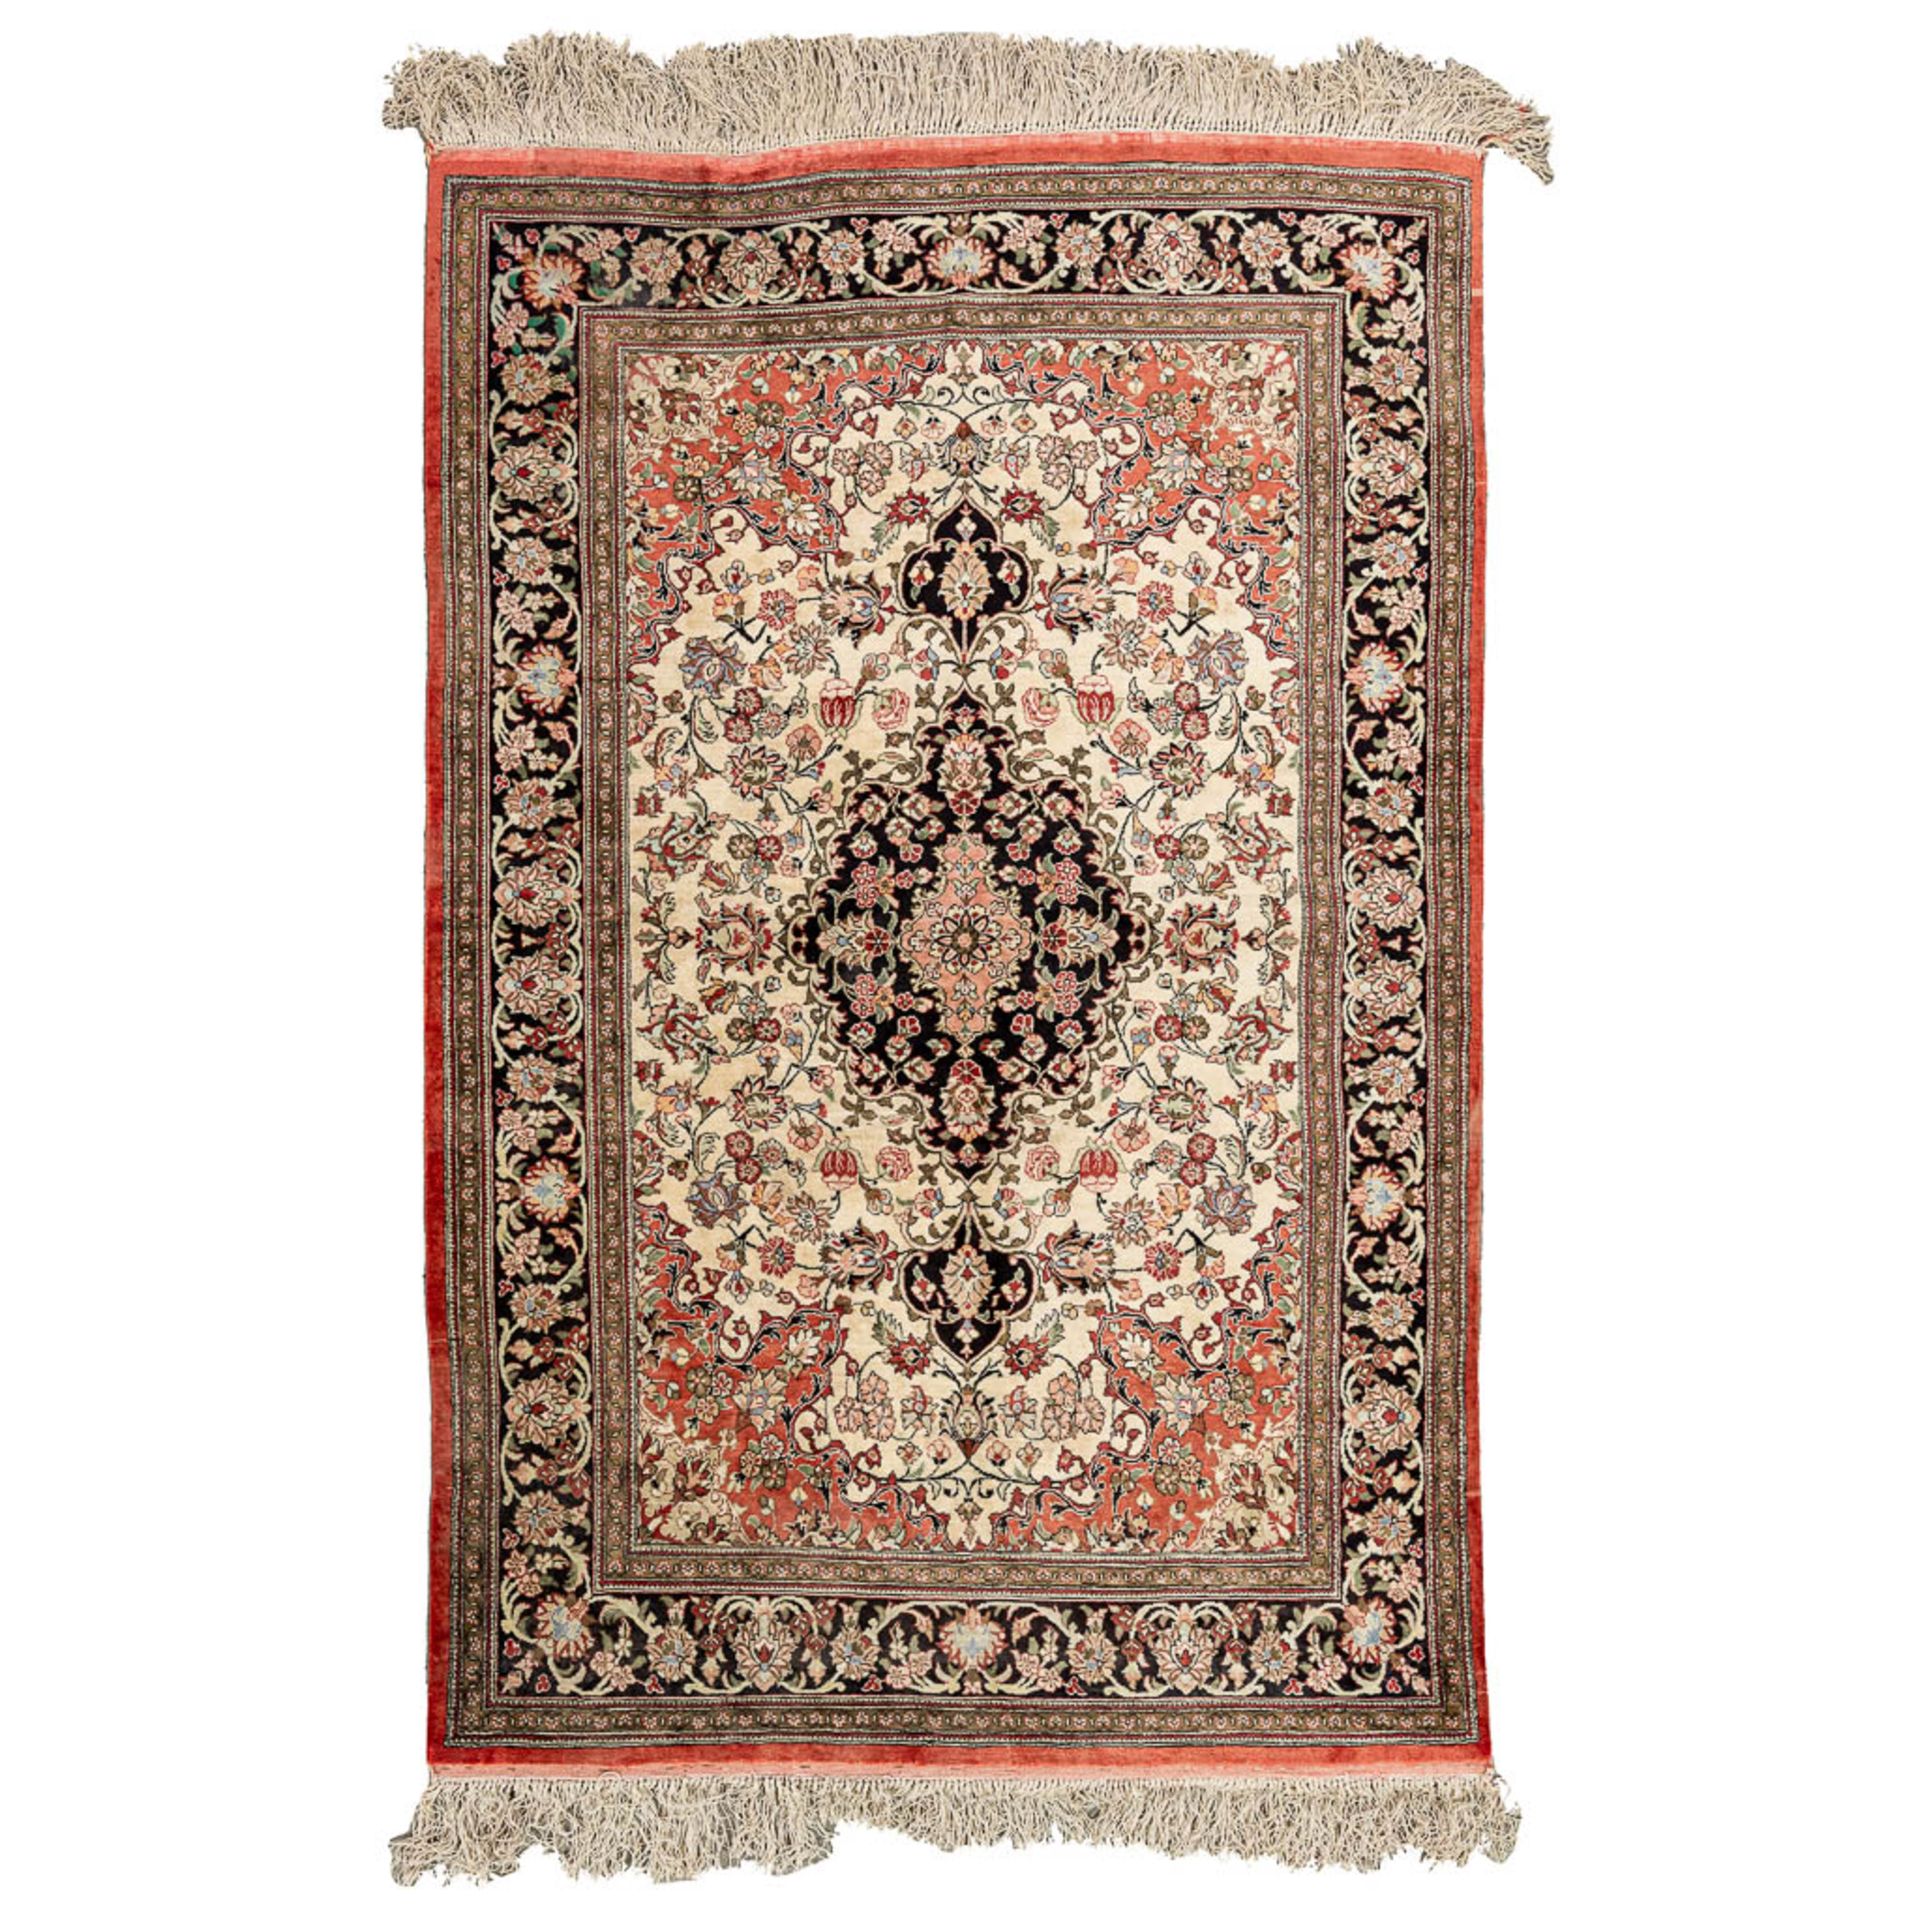 An Oriental hand-made carpet, Kirman. Made with silk. (103 x 158 cm)